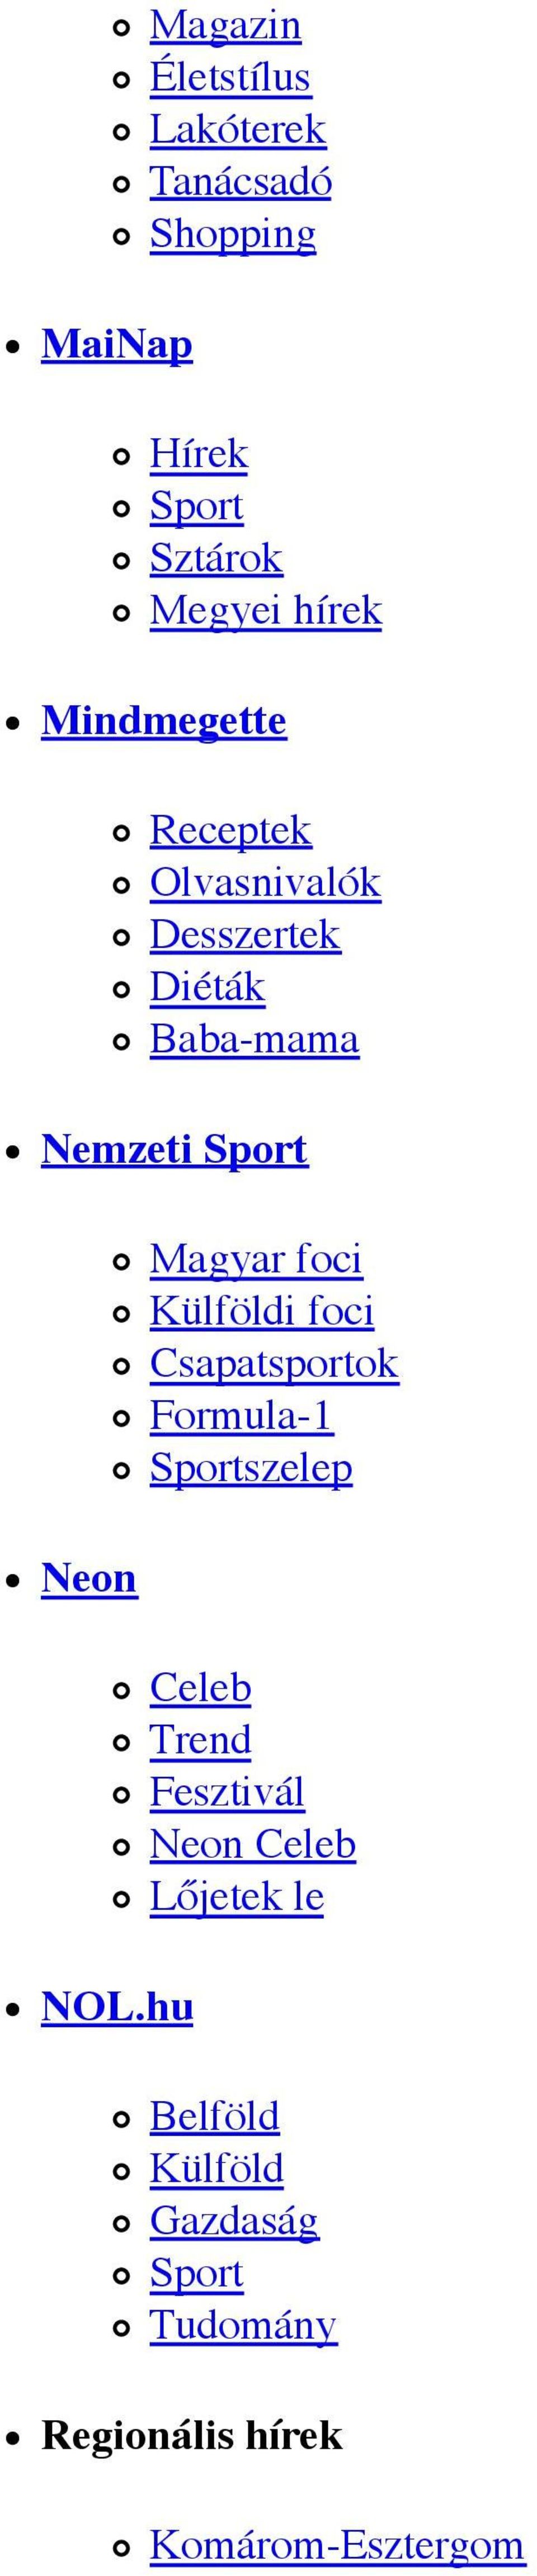 hu Magyar foci Külföldi foci Csapatsportok Formula-1 Sportszelep Celeb Trend Fesztivál